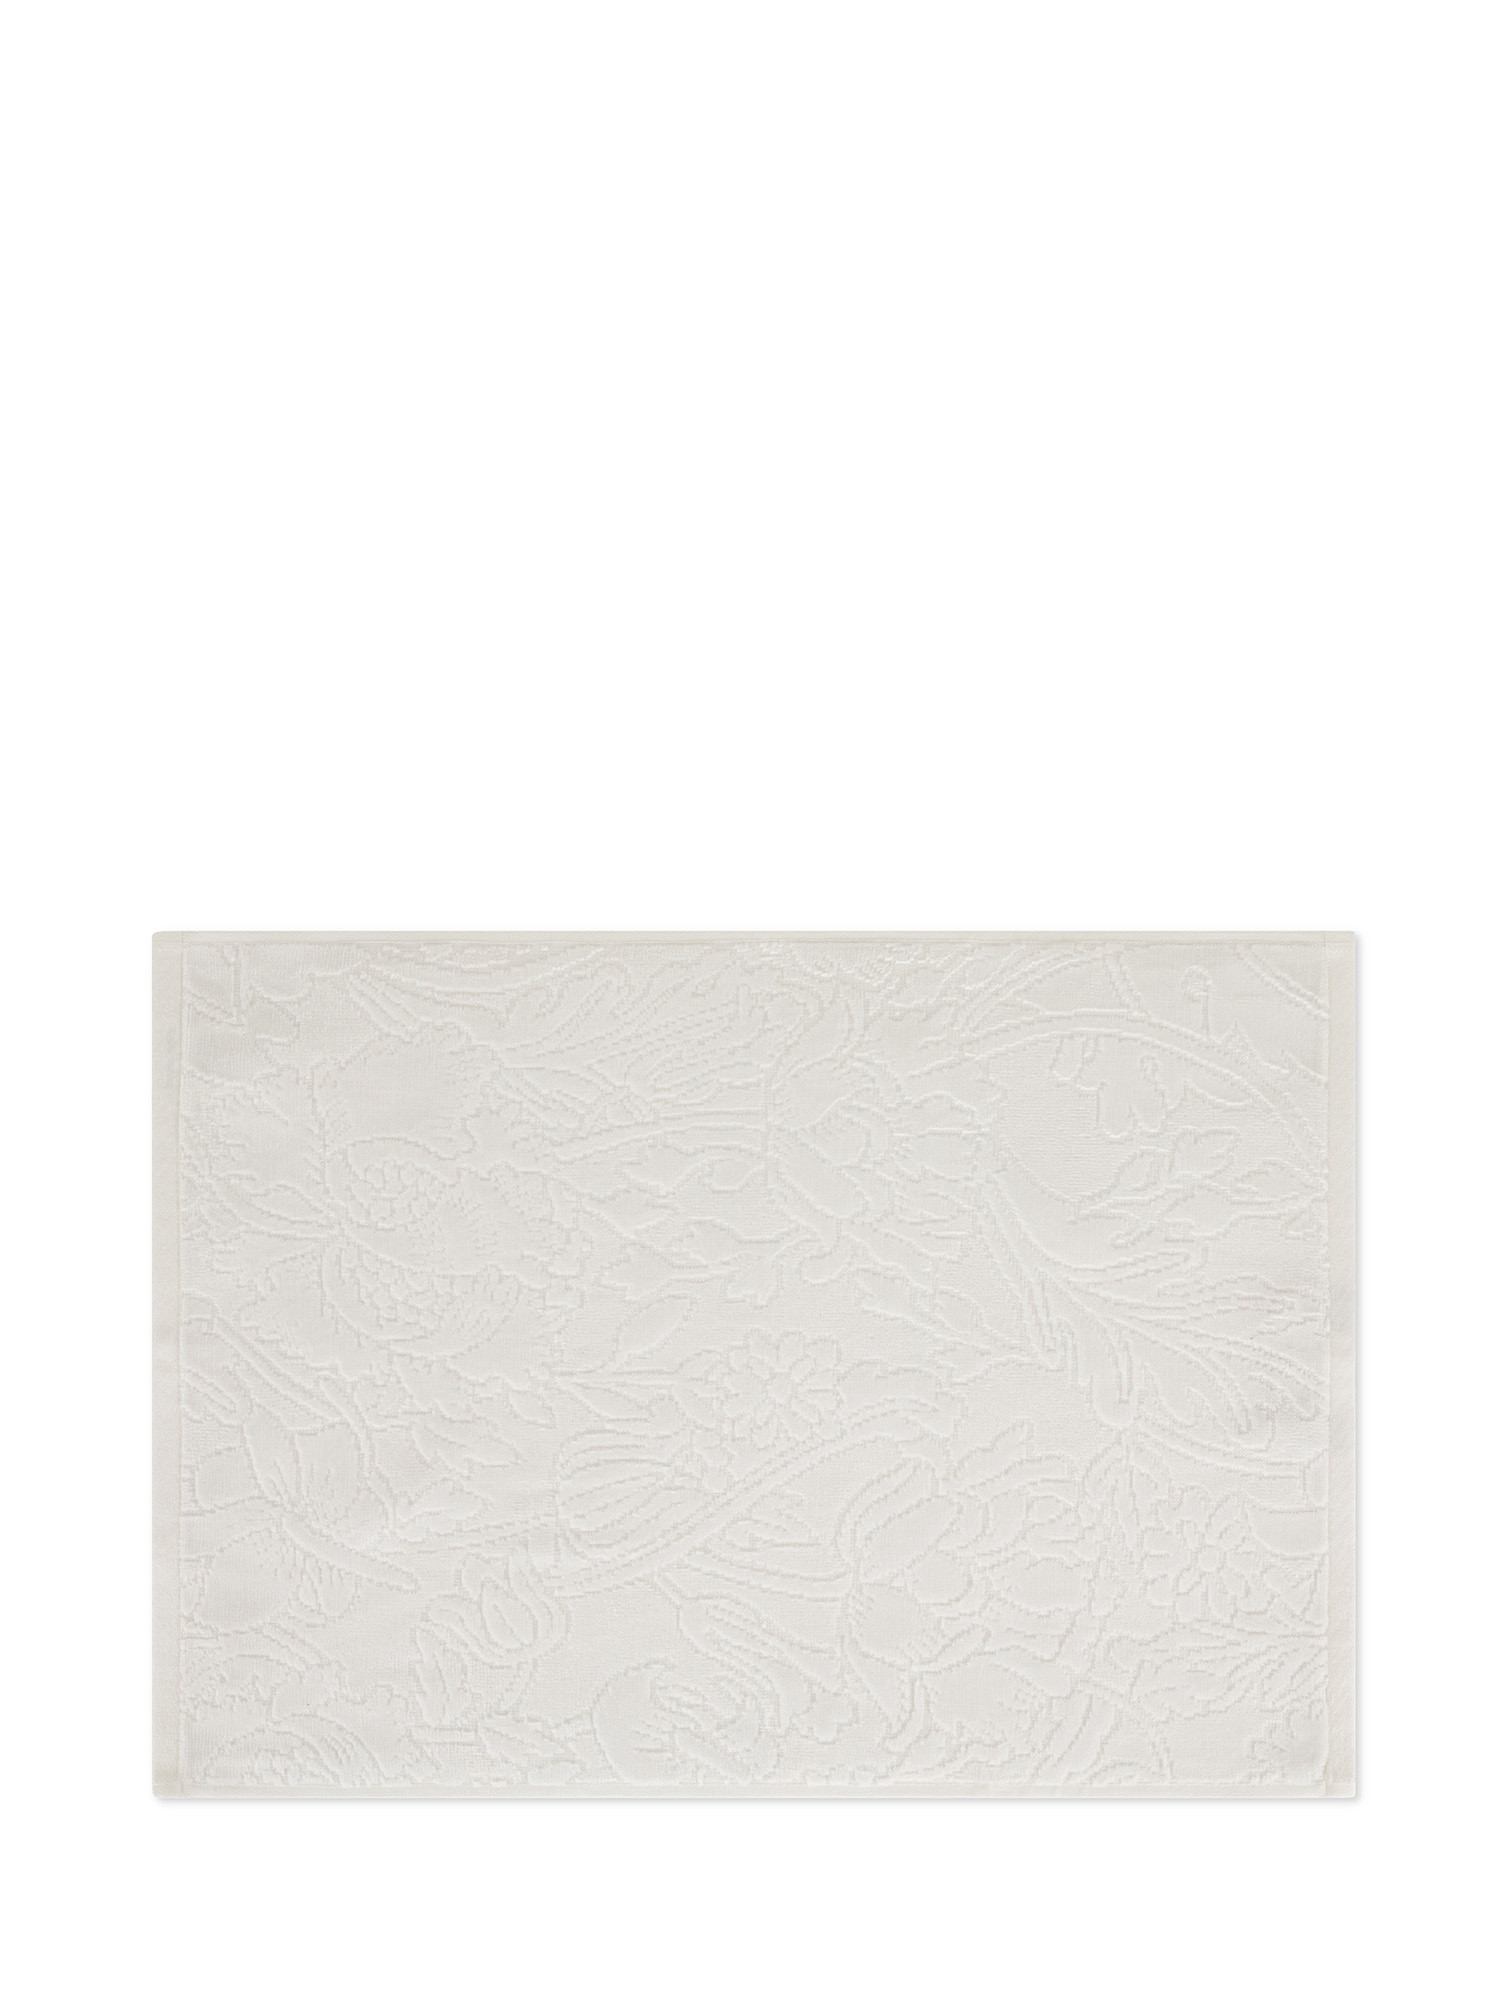 Asciugamano in velour di puro cotone tinta unita con lavorazione fiori, Bianco, large image number 1